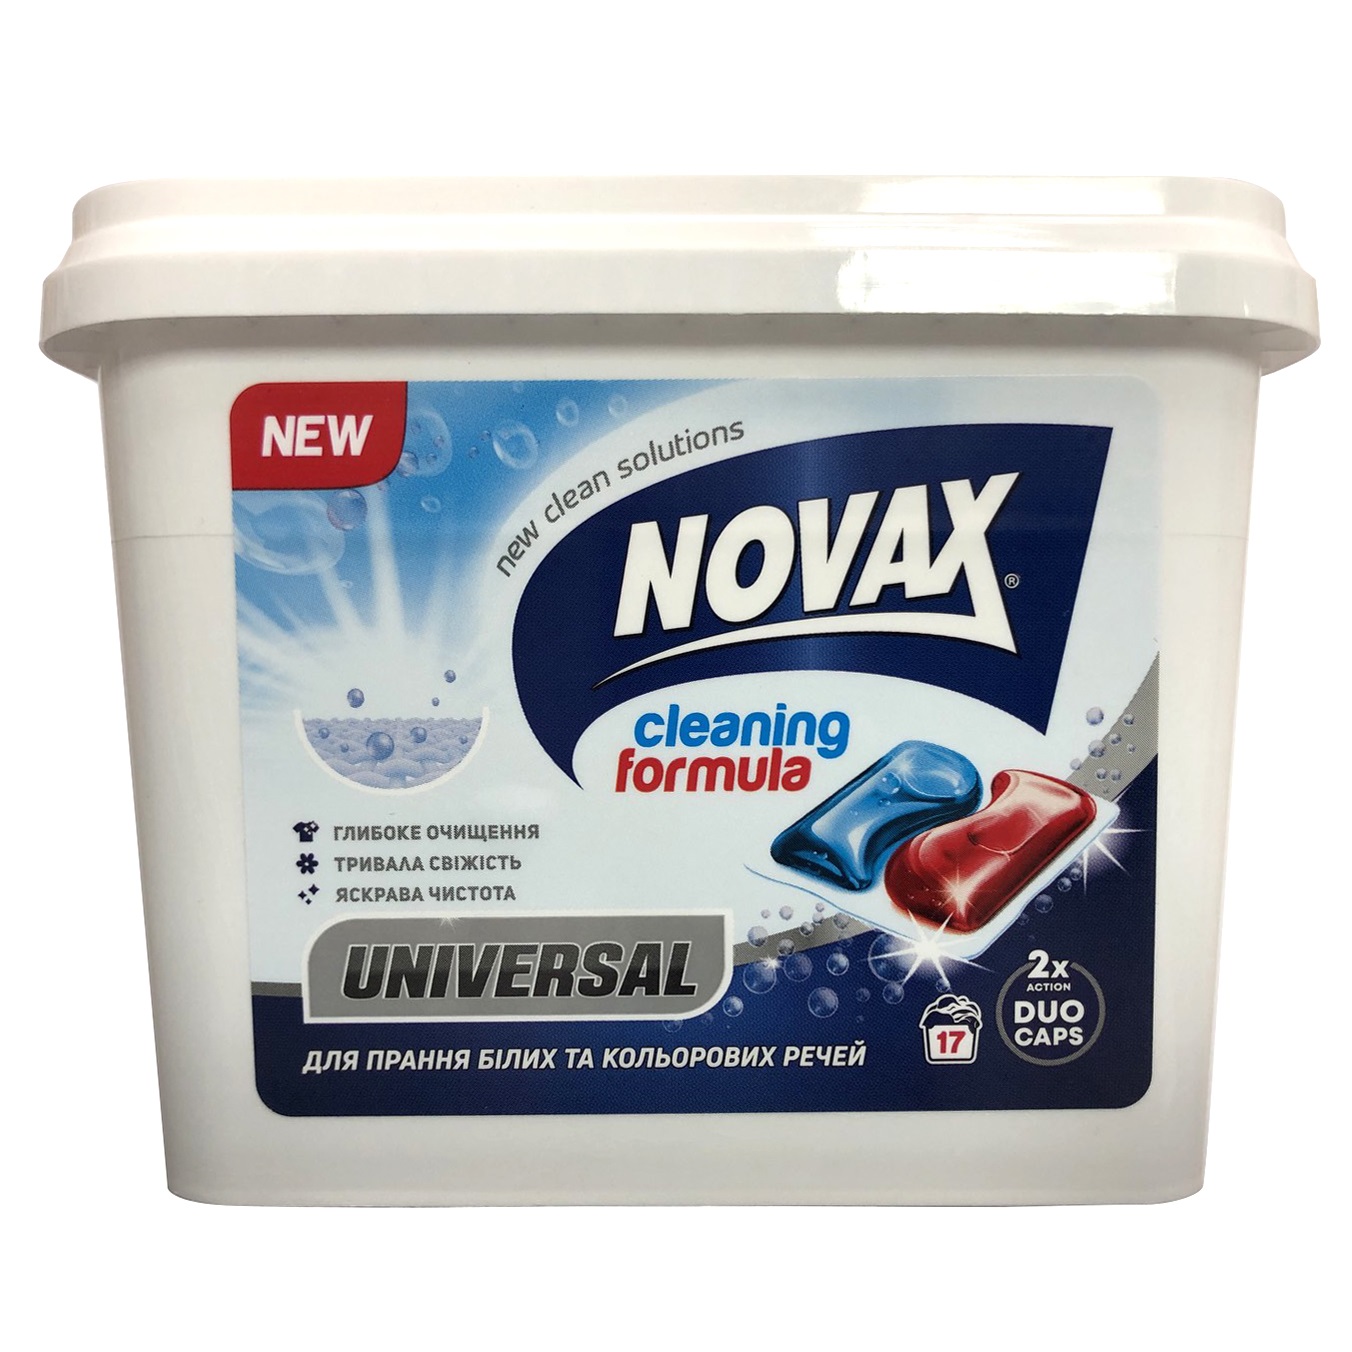 Капсули для прання Novax Universal, 17 шт. - фото 1